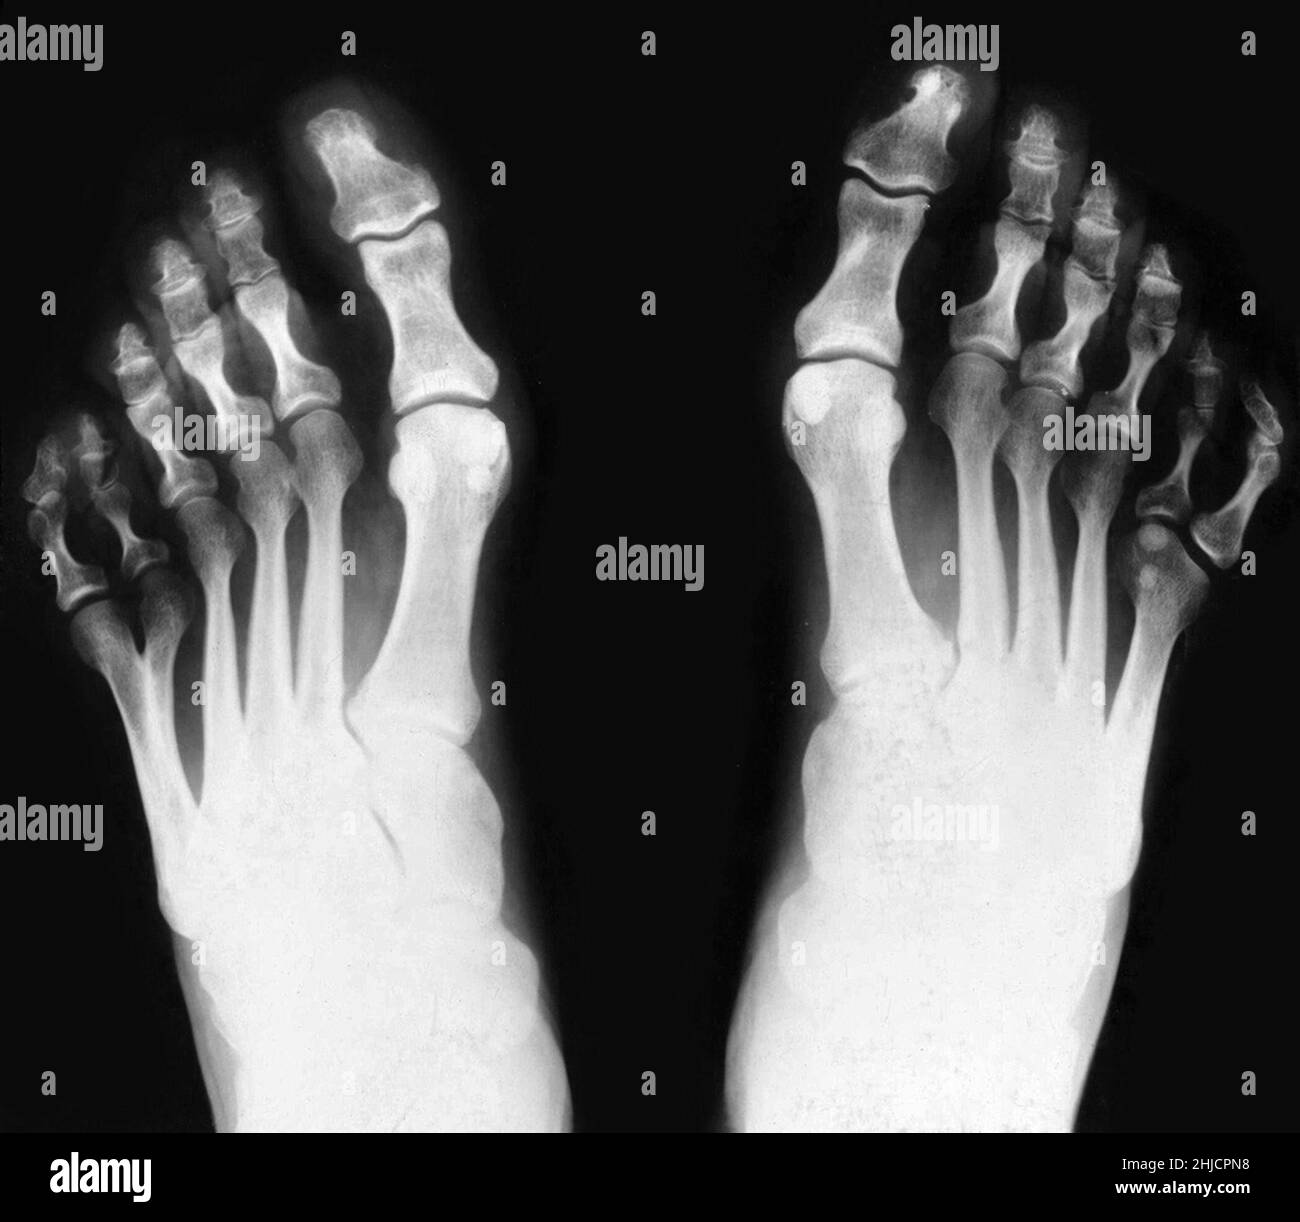 Röntgenaufnahme der Füße, zeigt postaxiale Polydaktylen. Polydaktylismus ist die angeborene Anomalie der mit fremden Fingern oder Zehen. Wie oben sichtbar, hatte diese Person sechs Zehen an beiden Füßen. Dies ist ein Beispiel für postaxiale Polydaktylen, weil die zusätzliche Ziffer auf der rosa Seite des Fußes auftritt. Stockfoto